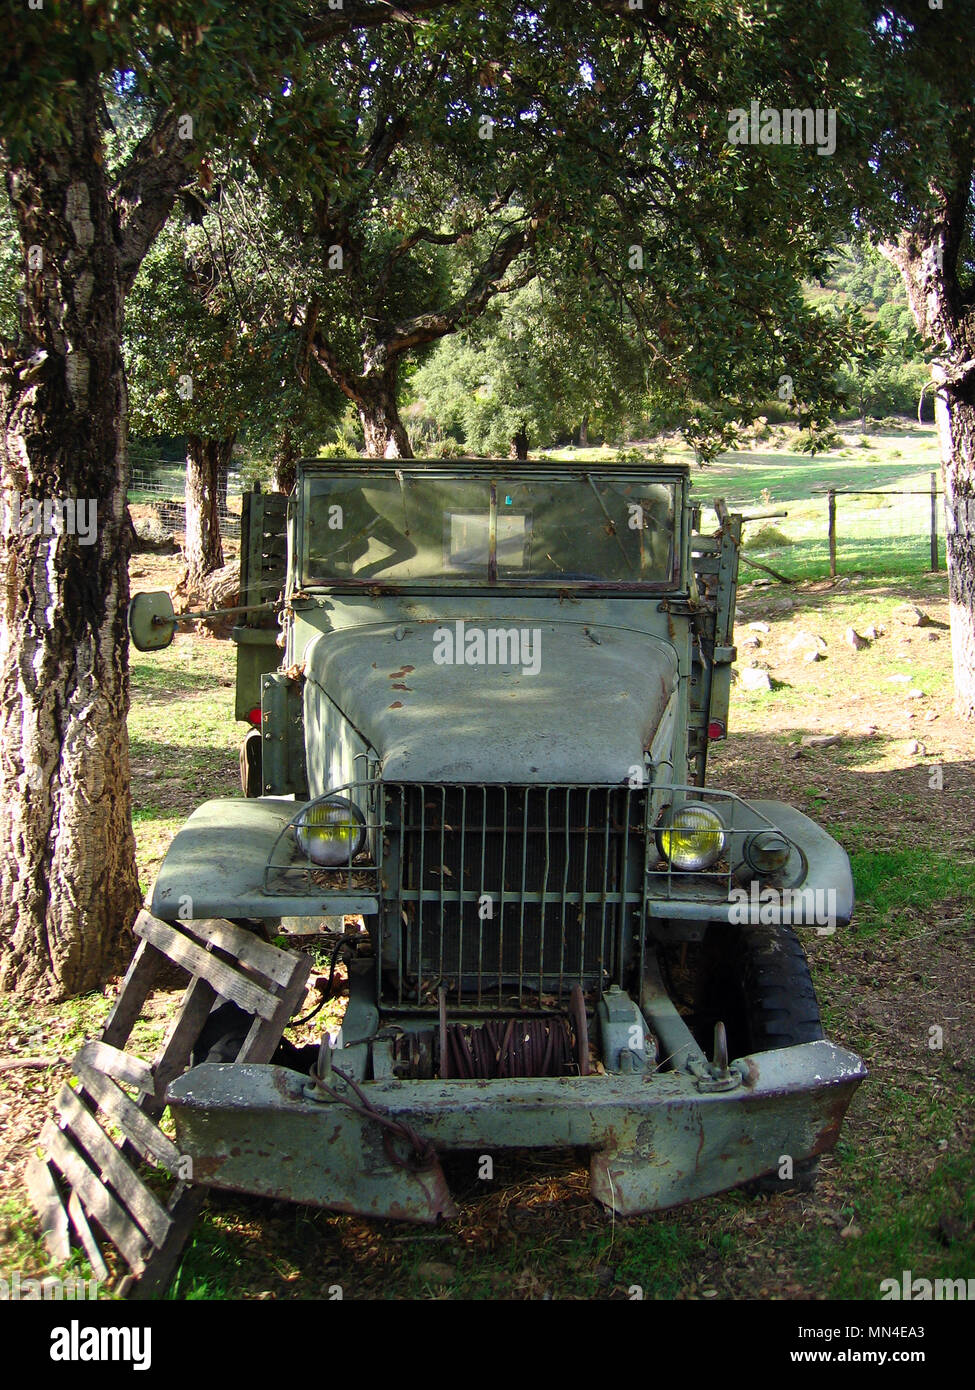 Der GMC CCKW auch als "Jimmy" war ein 2½-ton 6x6 Cargo truck der US-Armee, dass schwere Service sowohl im zweiten Weltkrieg und im Koreakrieg sah bekannt. Die ursprüngliche 'Deuce und eine Hälfte', ist das Rückgrat des berühmten Red Ball Express, die alliierten Armeen geliefert, da Sie ostwärts nach der normannischen Invasion geschoben gebildet.[2] Die CCKW kam in vielen Varianten, einschließlich offener oder geschlossener Kabine, langem Radstand (LWB353) und Kurz (SWB 352), und über eine Kerbe von spezialisierten Modelle. Es begann mit dem Einsatz der 6 × 6 M 35 1950 abgebaut werden, aber in der aktiven US-Service blieb bis Mitte der 1960er Jahre. Stockfoto